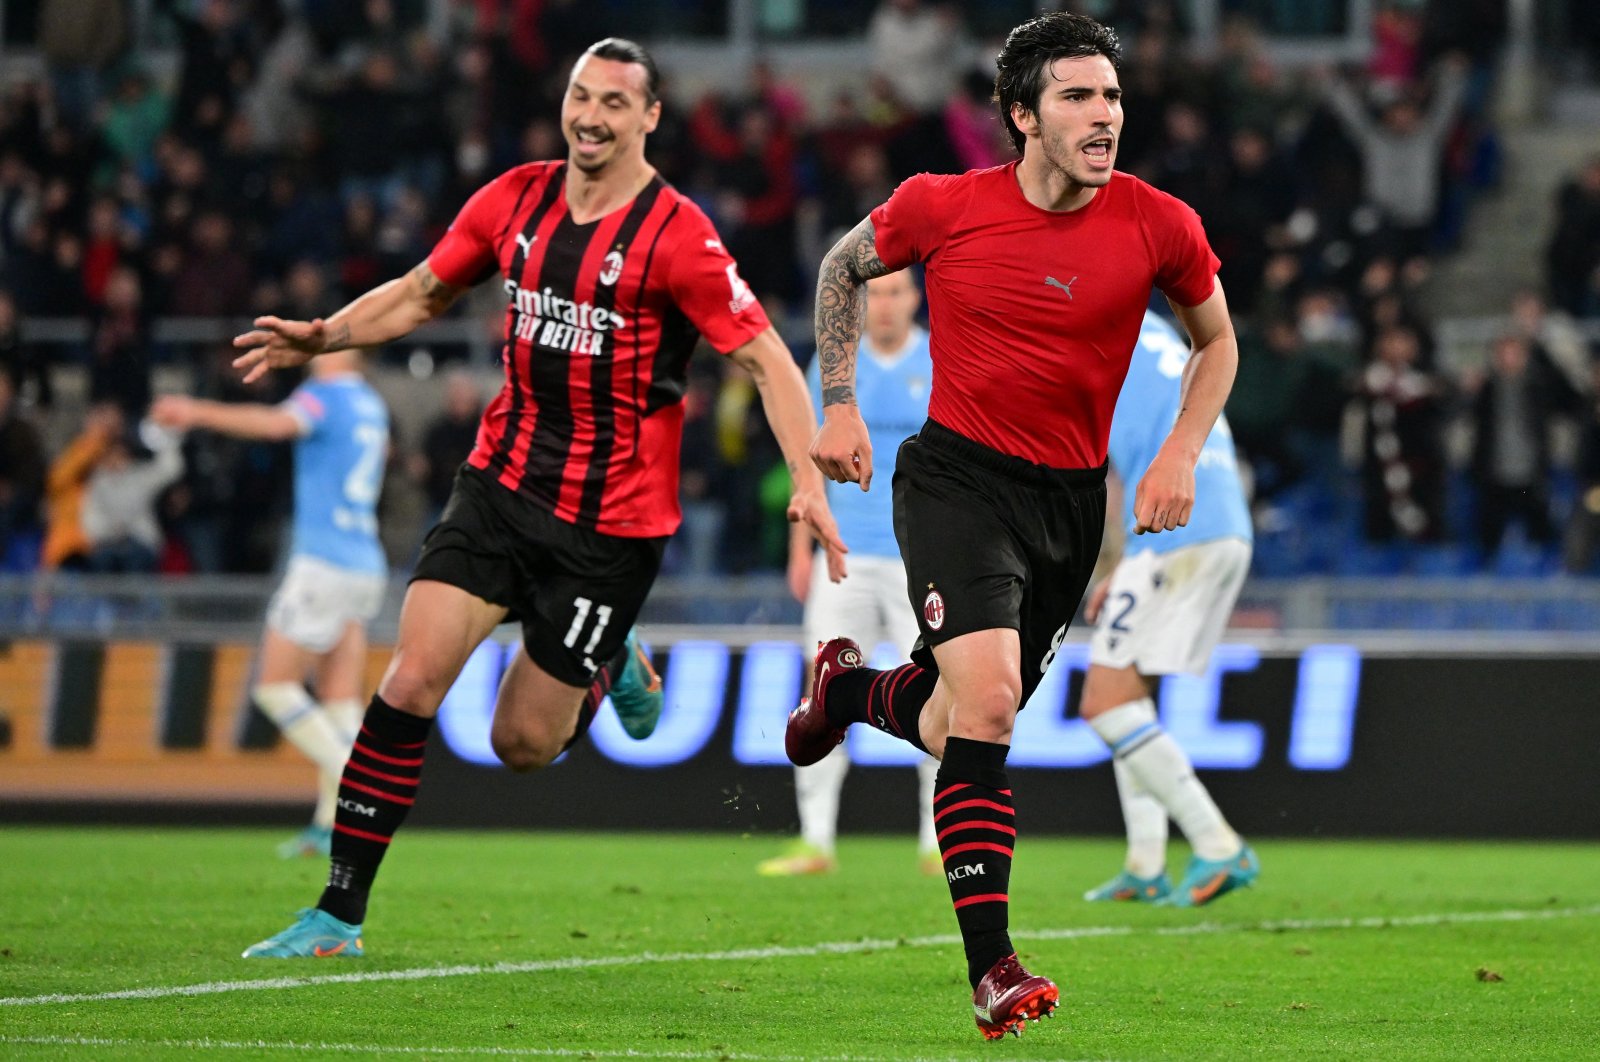 Milan merebut kembali posisi teratas dengan kemenangan kunci, Napoli tergelincir dalam pertarungan gelar